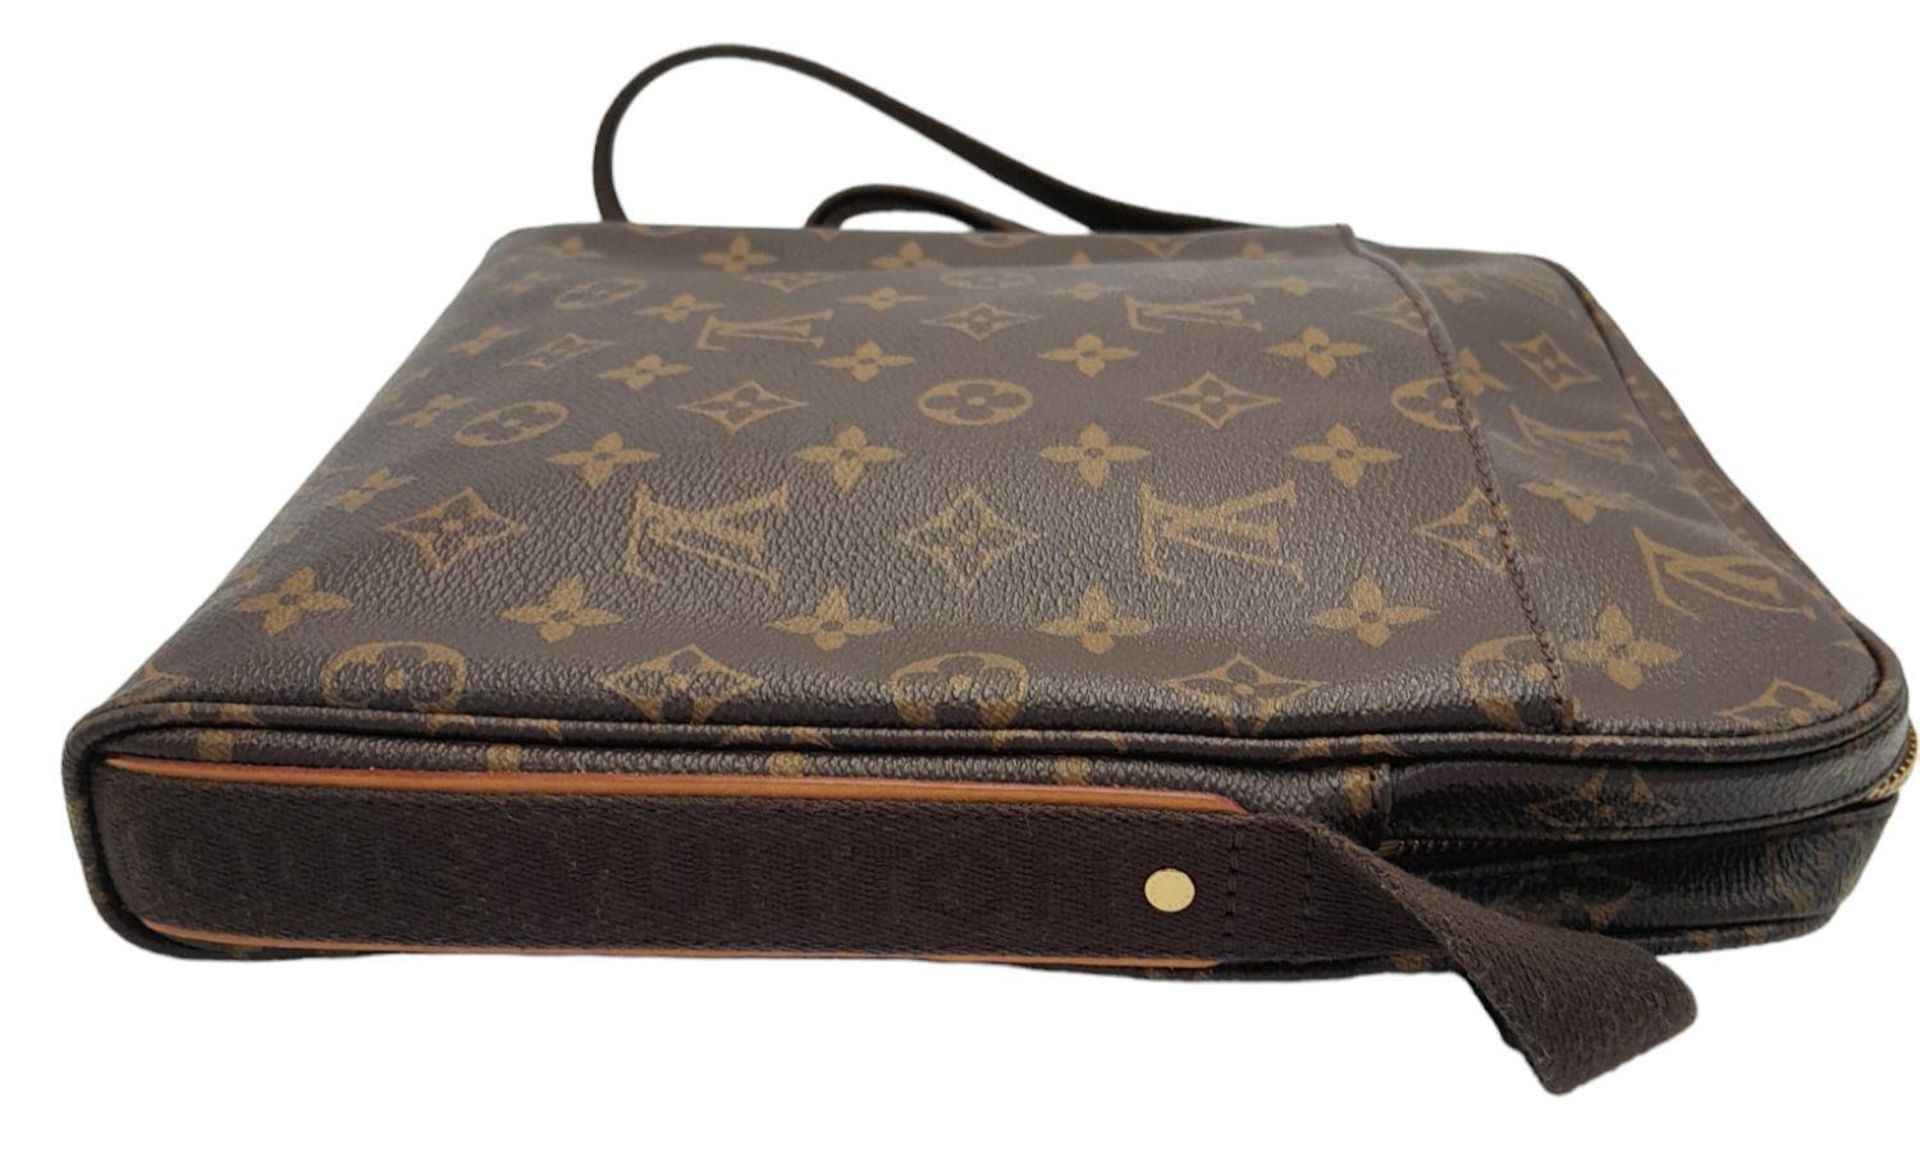 A Louis Vuitton Trotteur Beaubourg Satchel Bag. Monogramed canvas exterior with gold-toned hardware, - Bild 4 aus 9